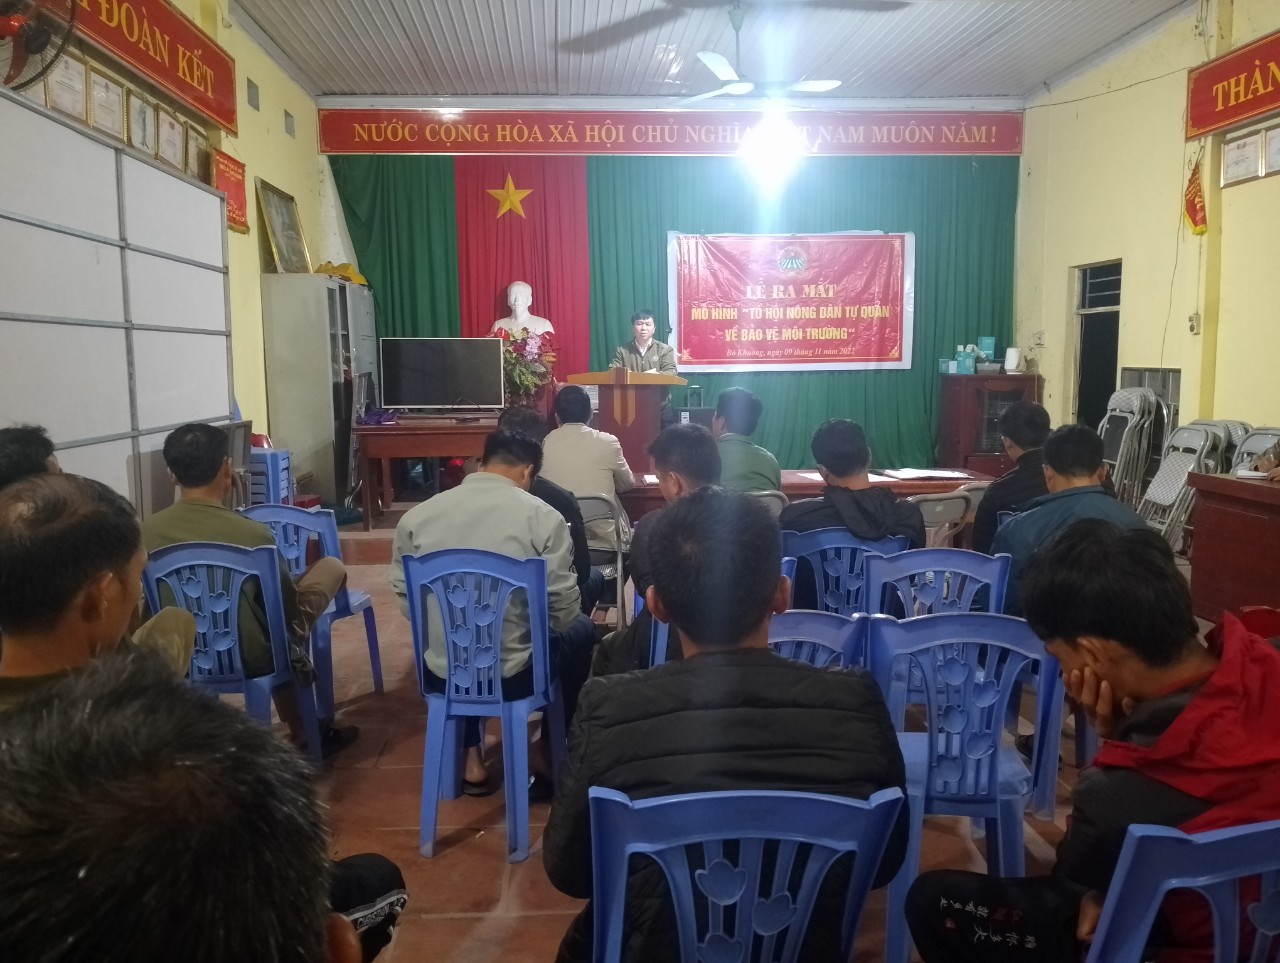 Lễ ra mắt mô hình "Tổ hội nông dân tự quản về bảo vệ môi trường" xóm Bó Khuông, thôn Tồng Riền